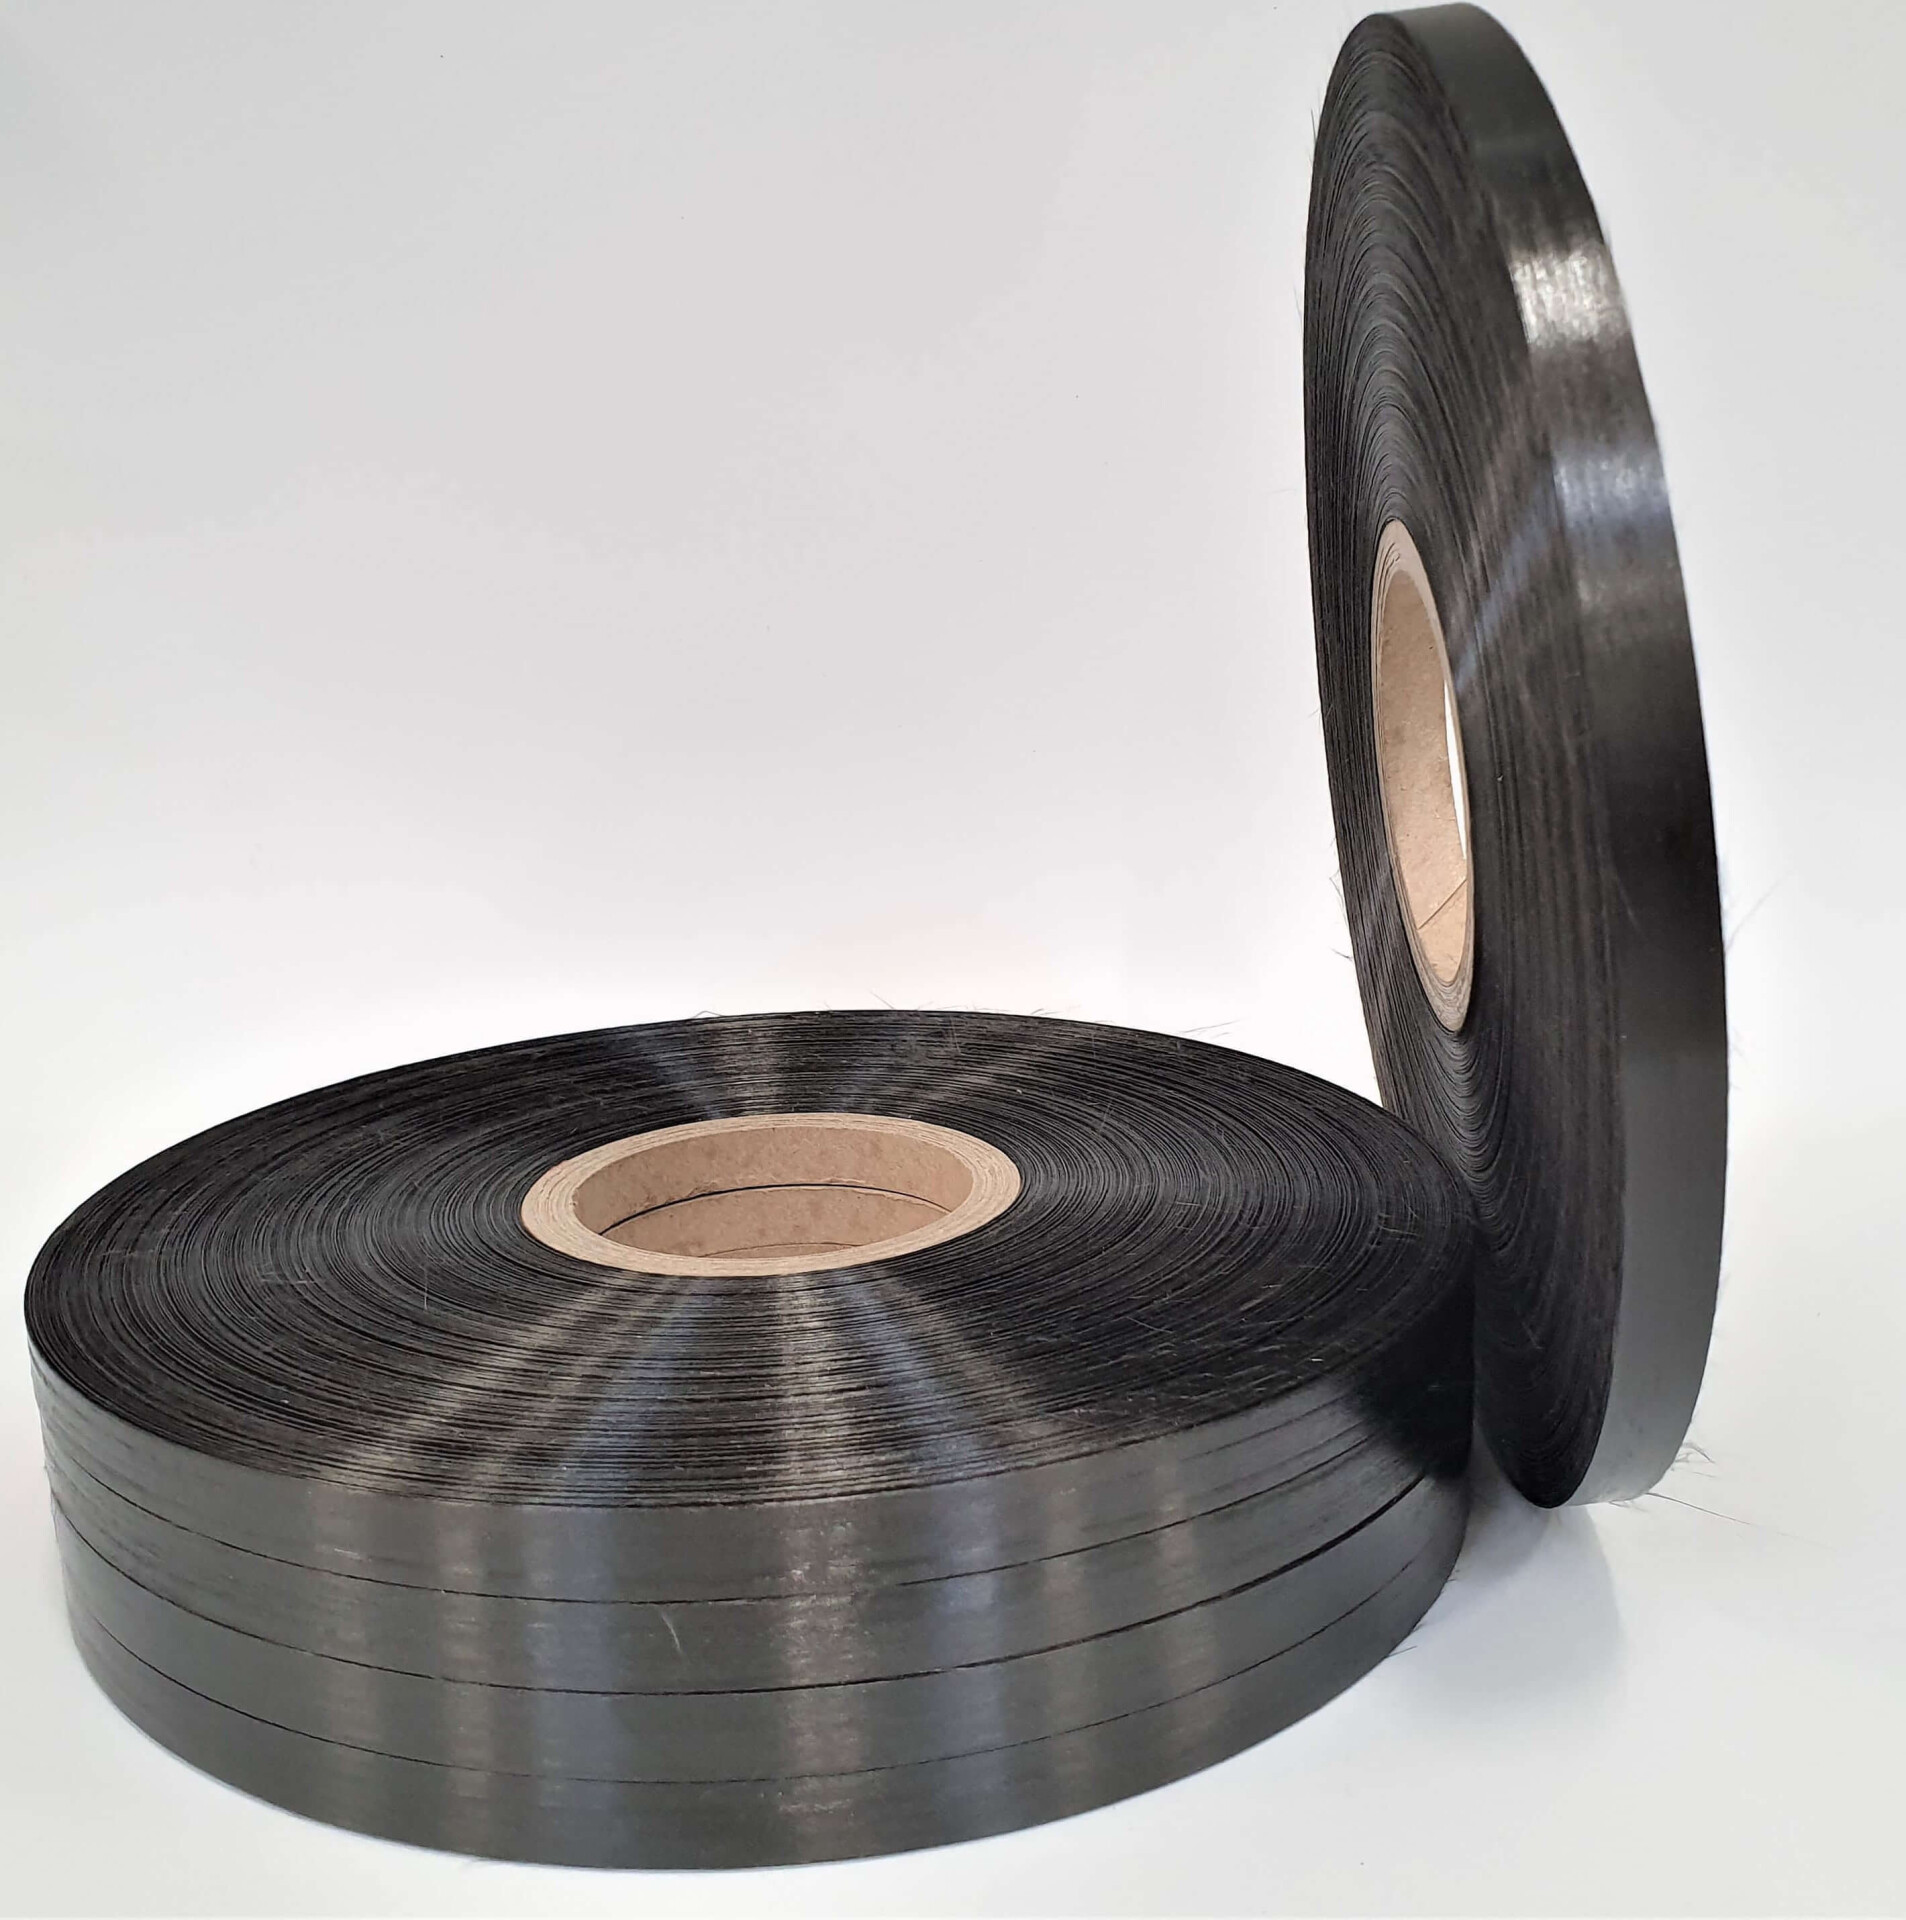 UD-tape spool